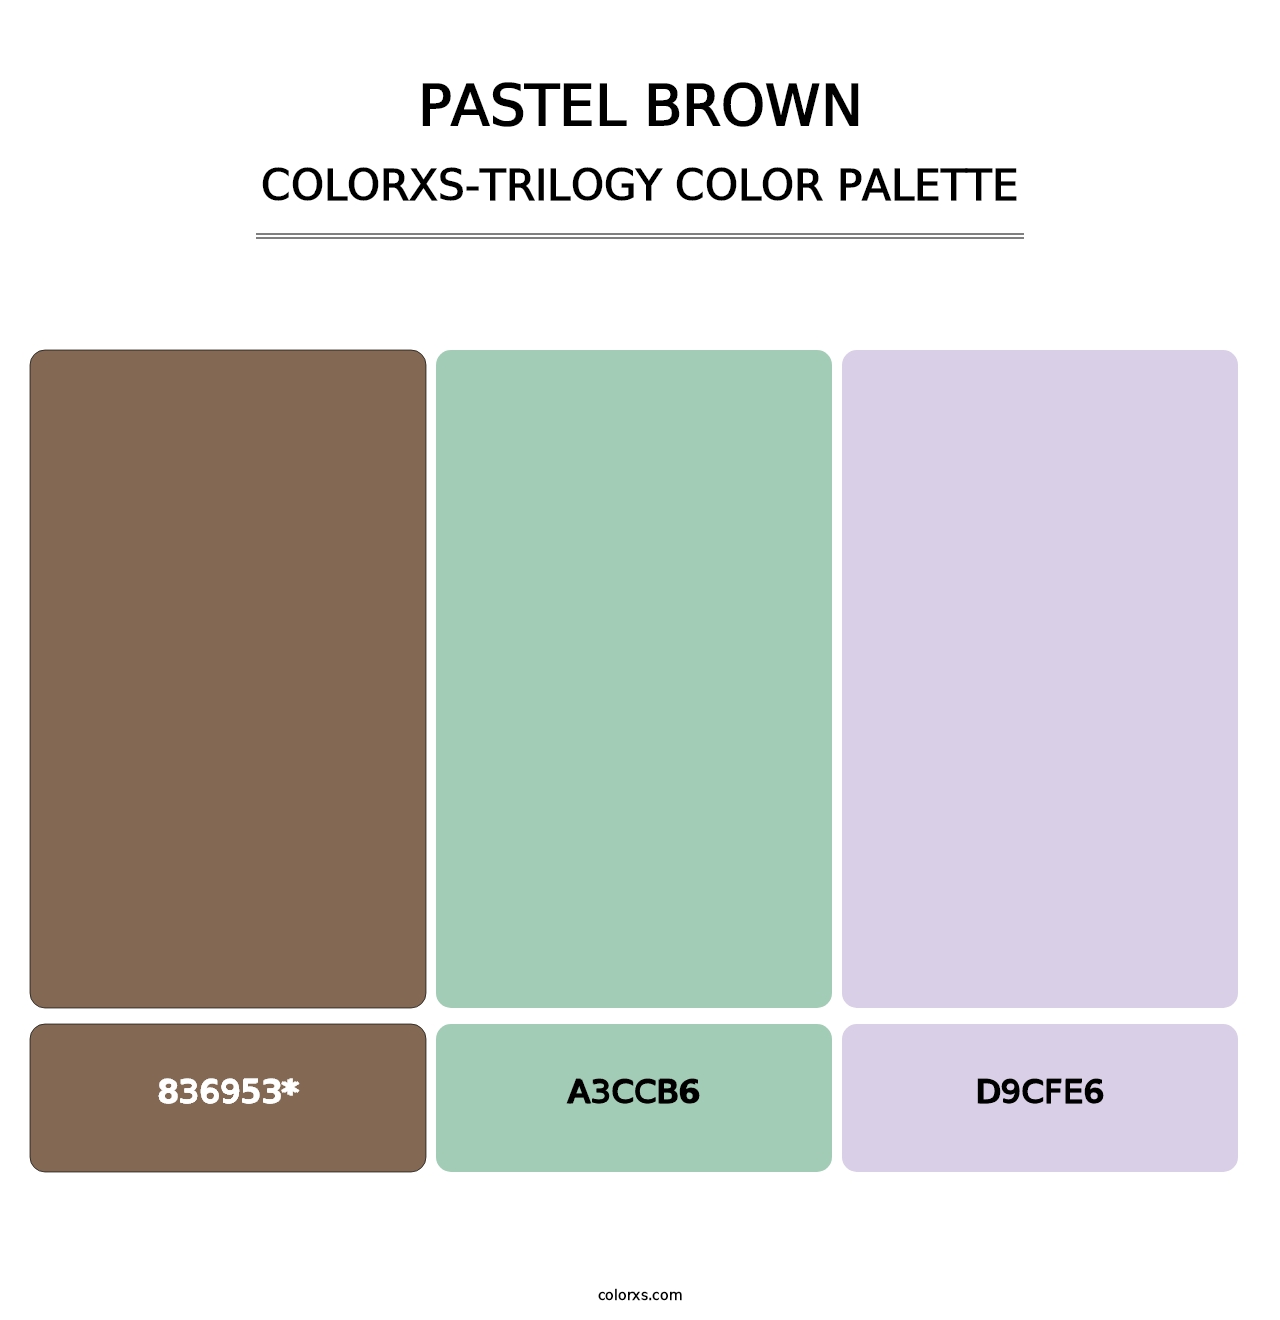 Pastel Brown - Colorxs Trilogy Palette